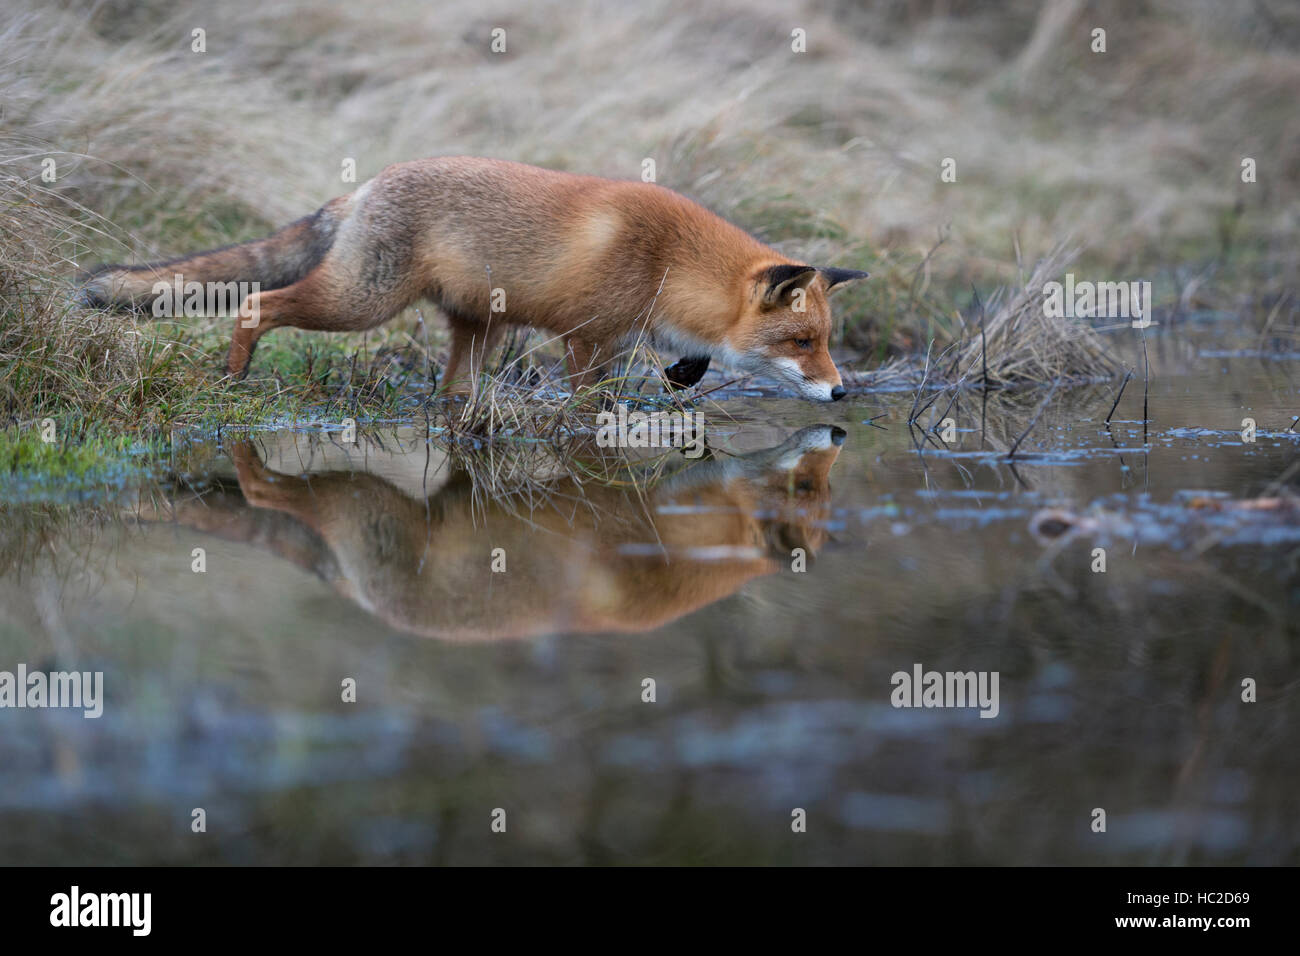 Red Fox ( Vulpes vulpes ) la caccia ad un corpo di acqua, nella tipica posa, ad alto concentrato, mirroring su acqua calma superficie. Foto Stock